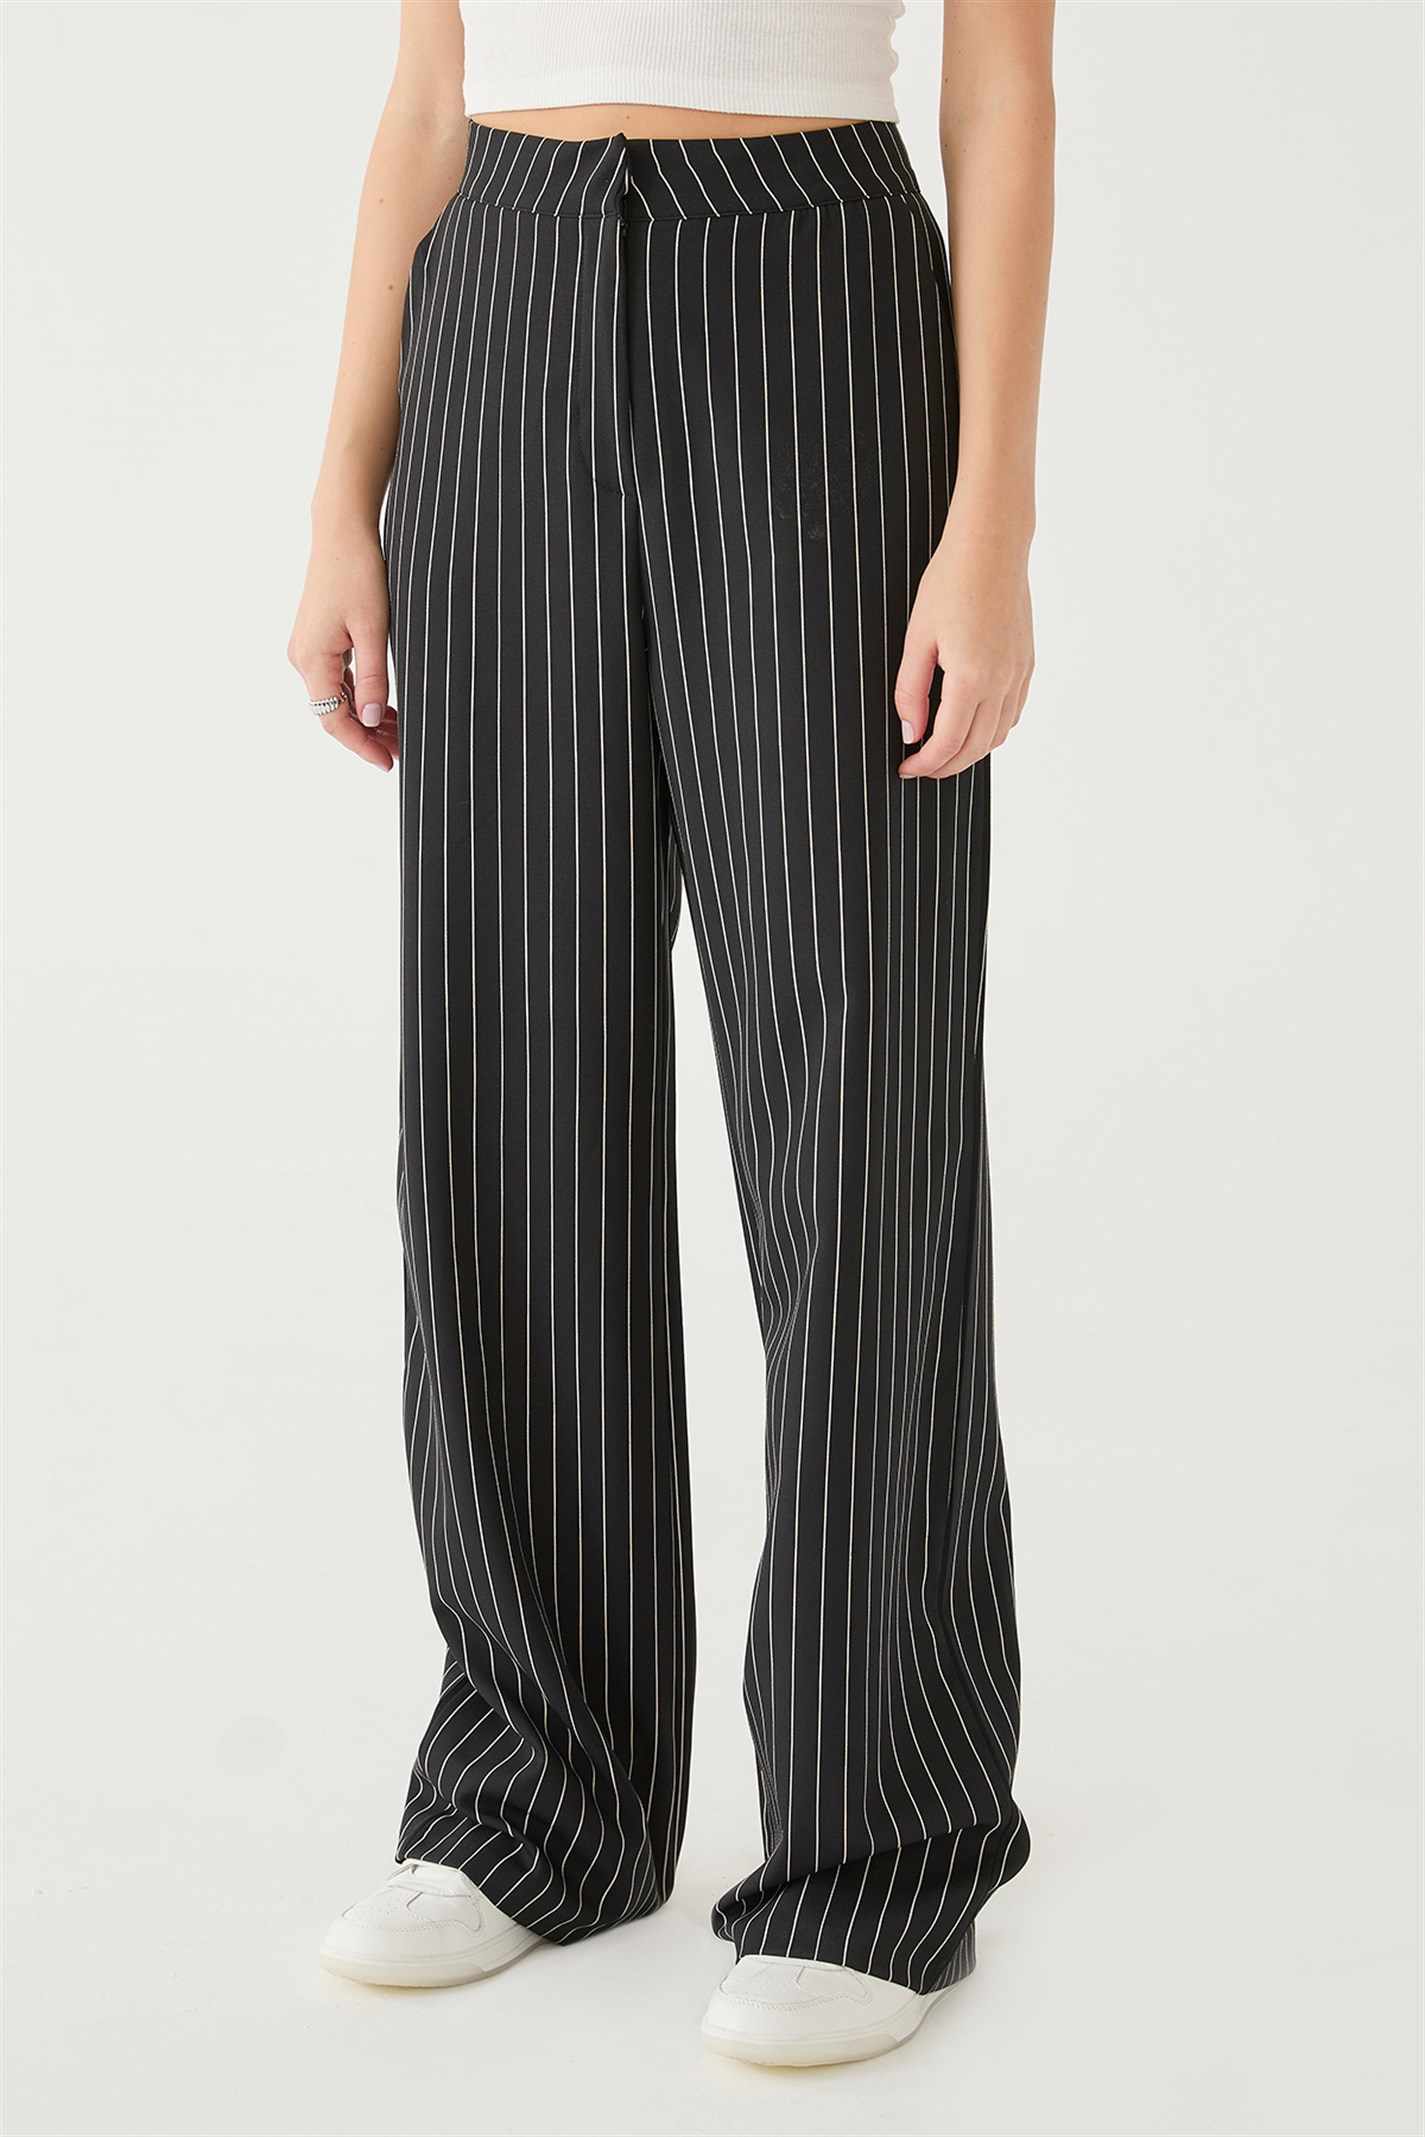 Siyah Çizgili Pantolon | Suud Collection